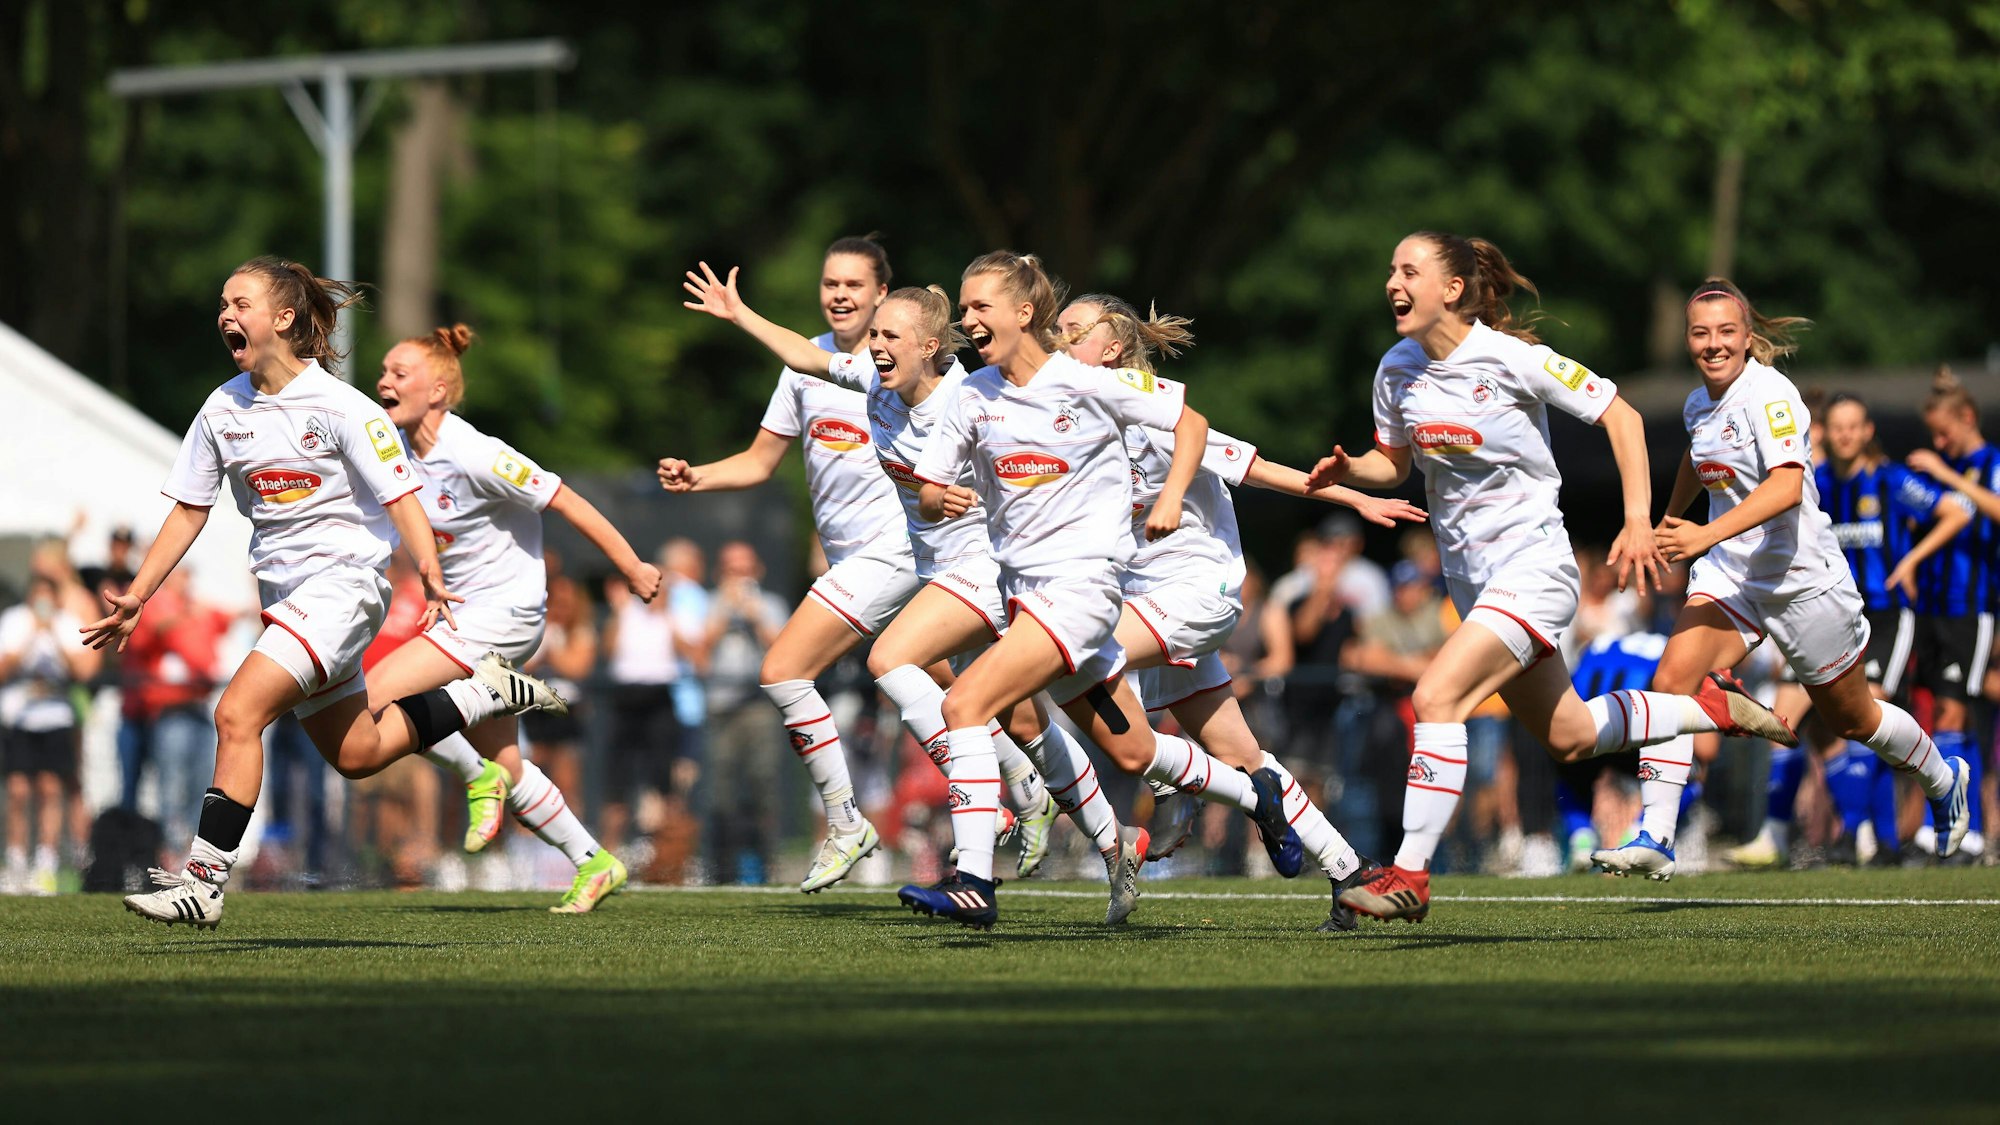 Die Spielerinnen der U20 des 1. FC Köln laufen jubelnd über den Rasen